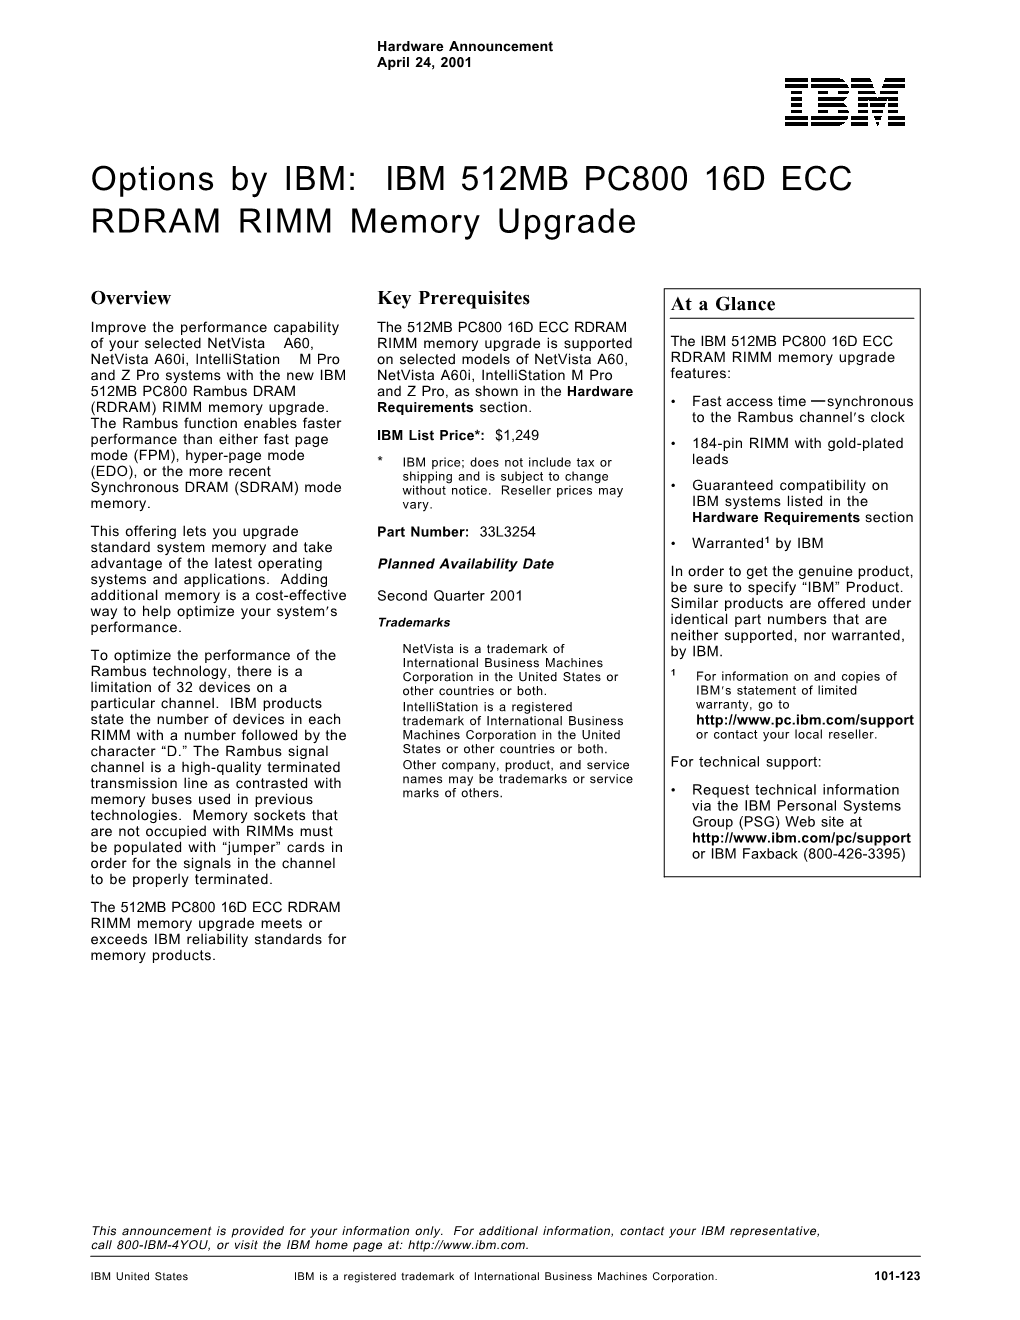 Options by IBM: IBM 512MB PC800 16D ECC RDRAM RIMM Memory Upgrade